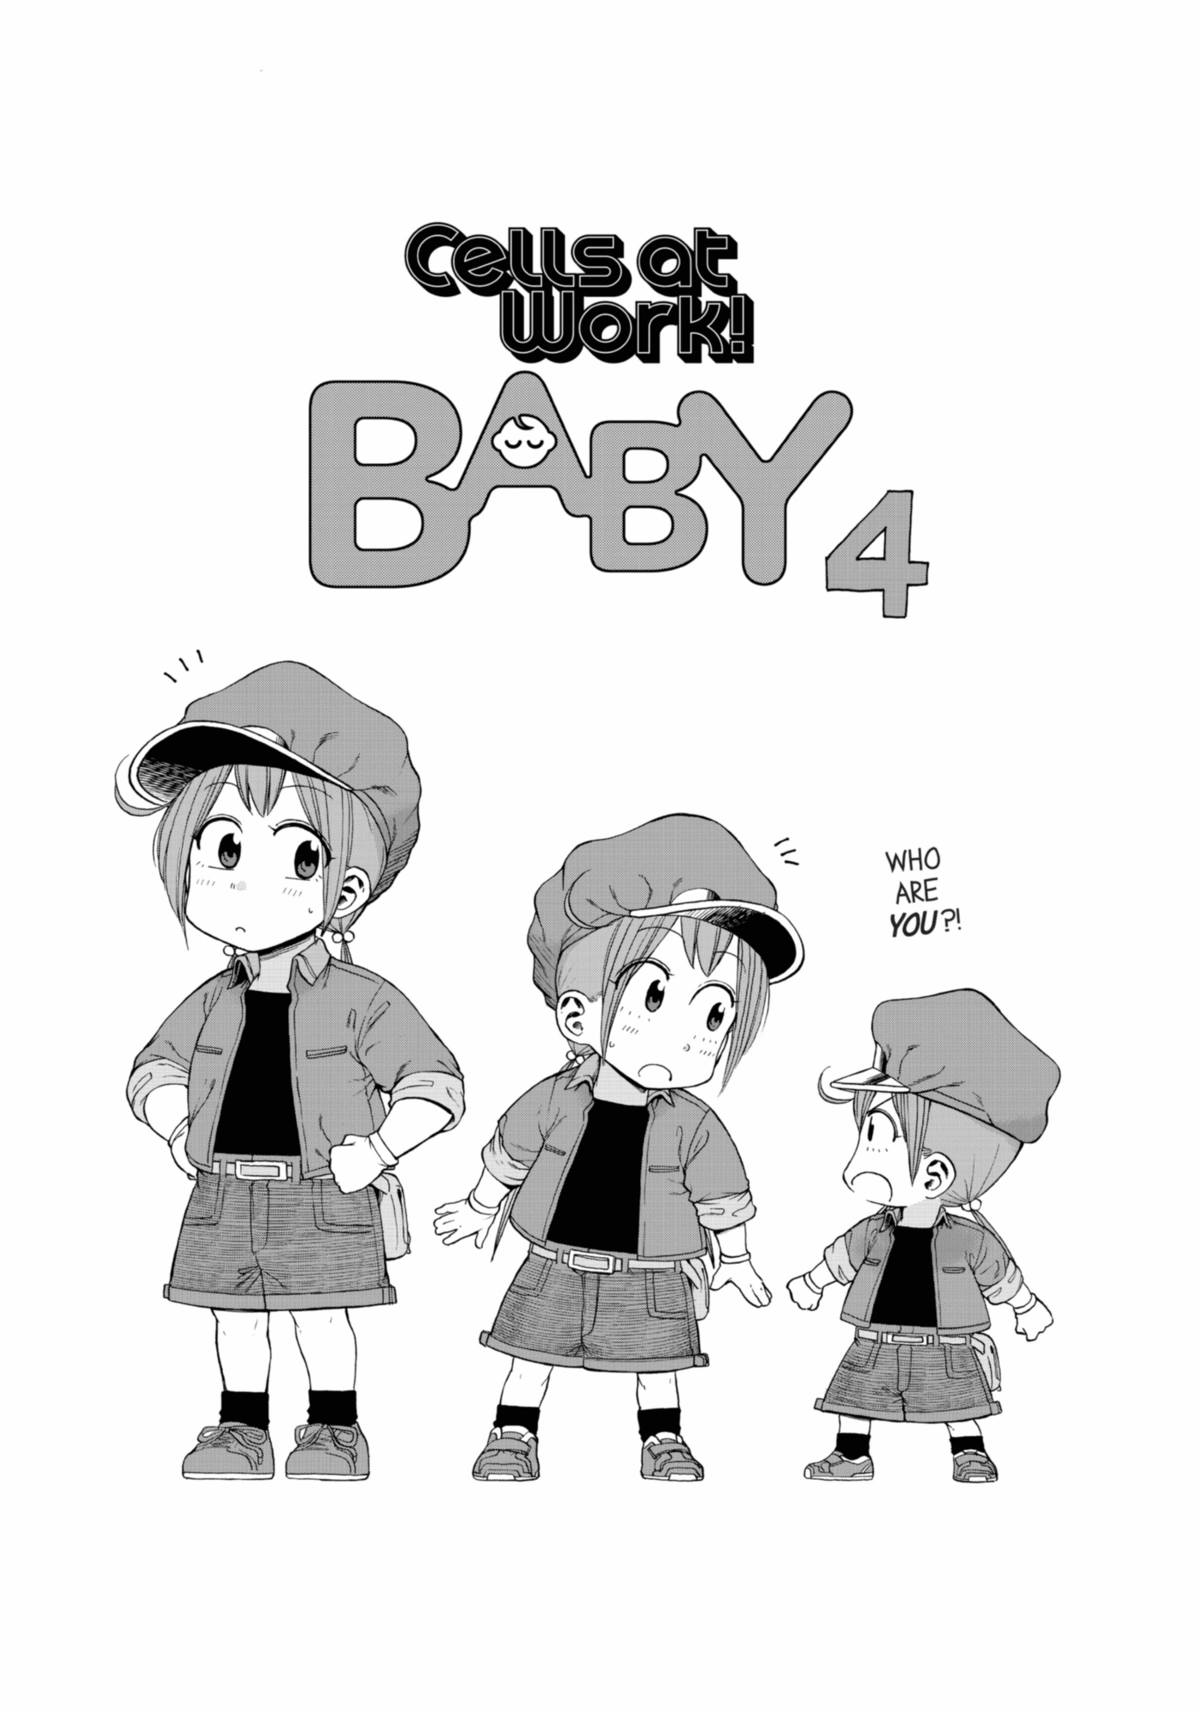 はたらく細胞BABY 2 [Hataraku Saibou BABY 2] by Yasuhiro Fukuda